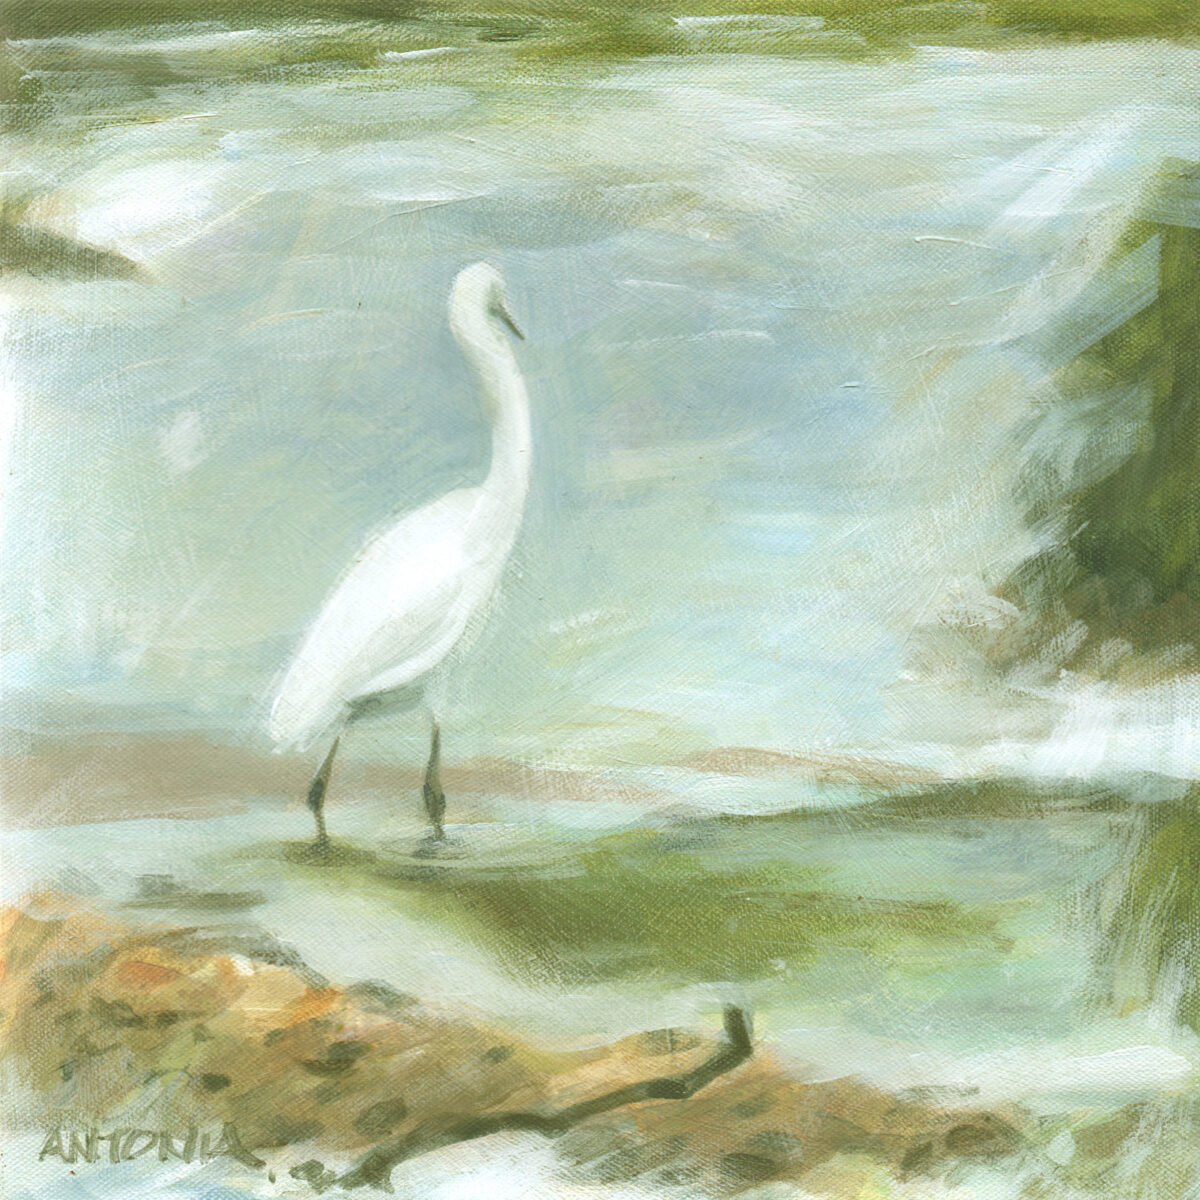 Artwork image titled: Morning Egret III – River Asker